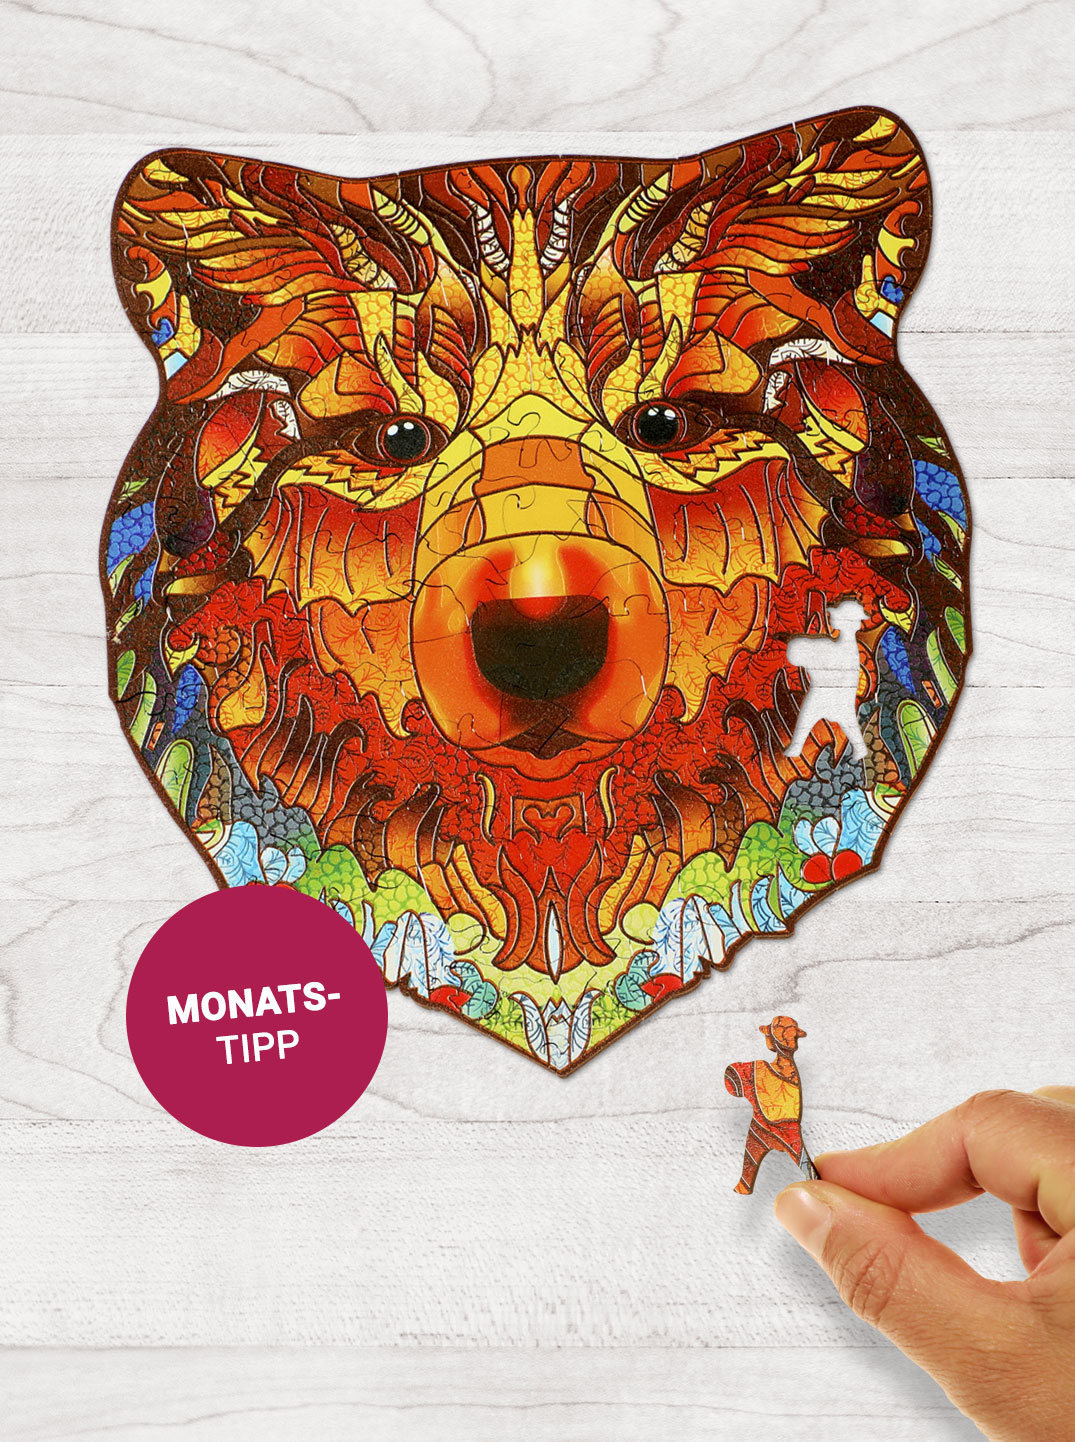 Ein buntes Holzpuzzle in Form eines Bärenkopfes liegt auf einem hellen Holzuntergrund. Daneben steht "Monatstipp".